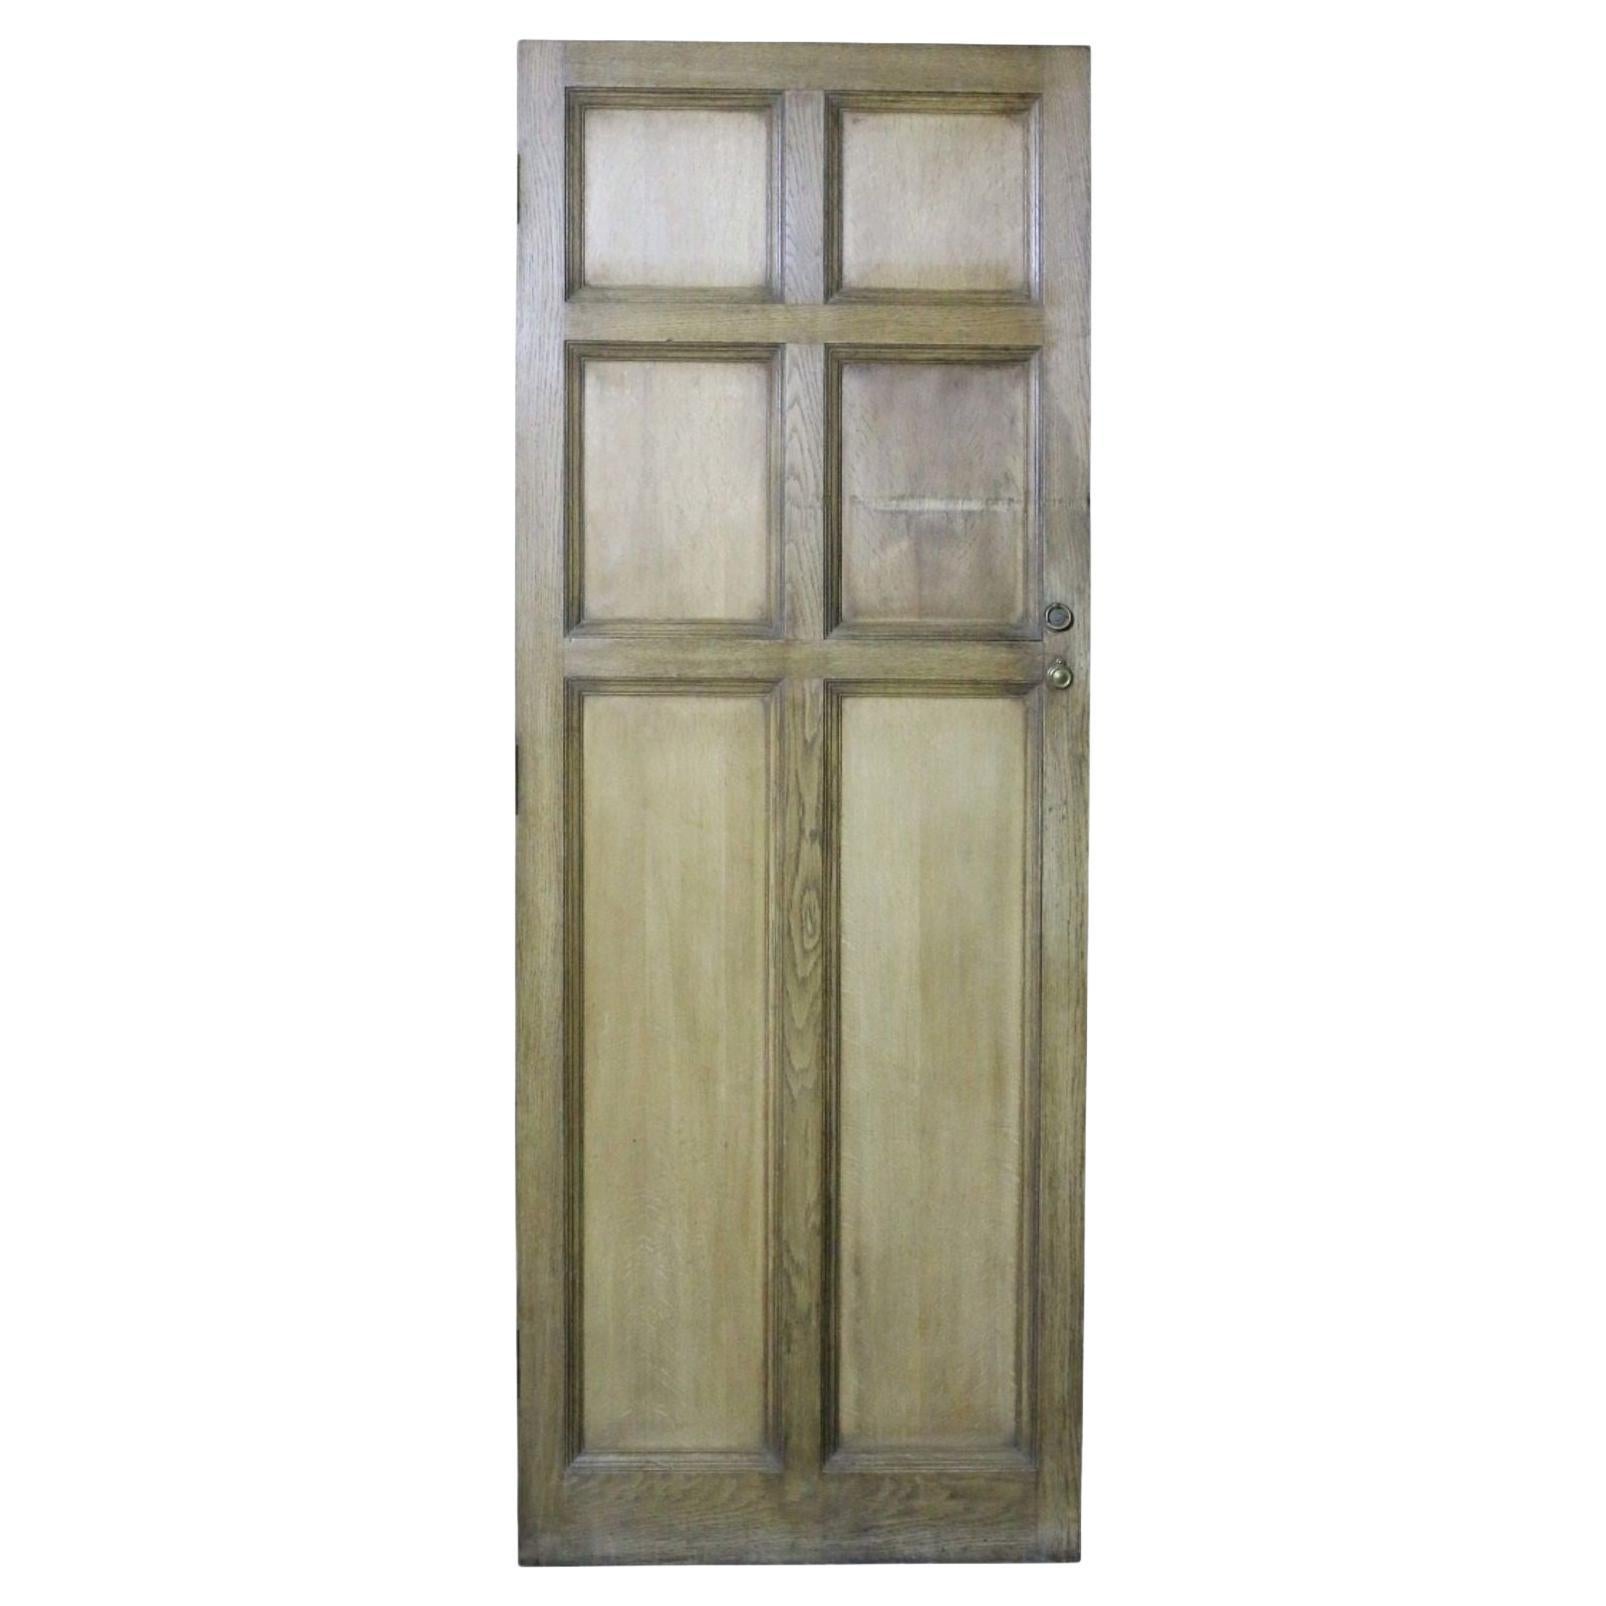 A Reclaimed Oak Six Panel Door For Sale